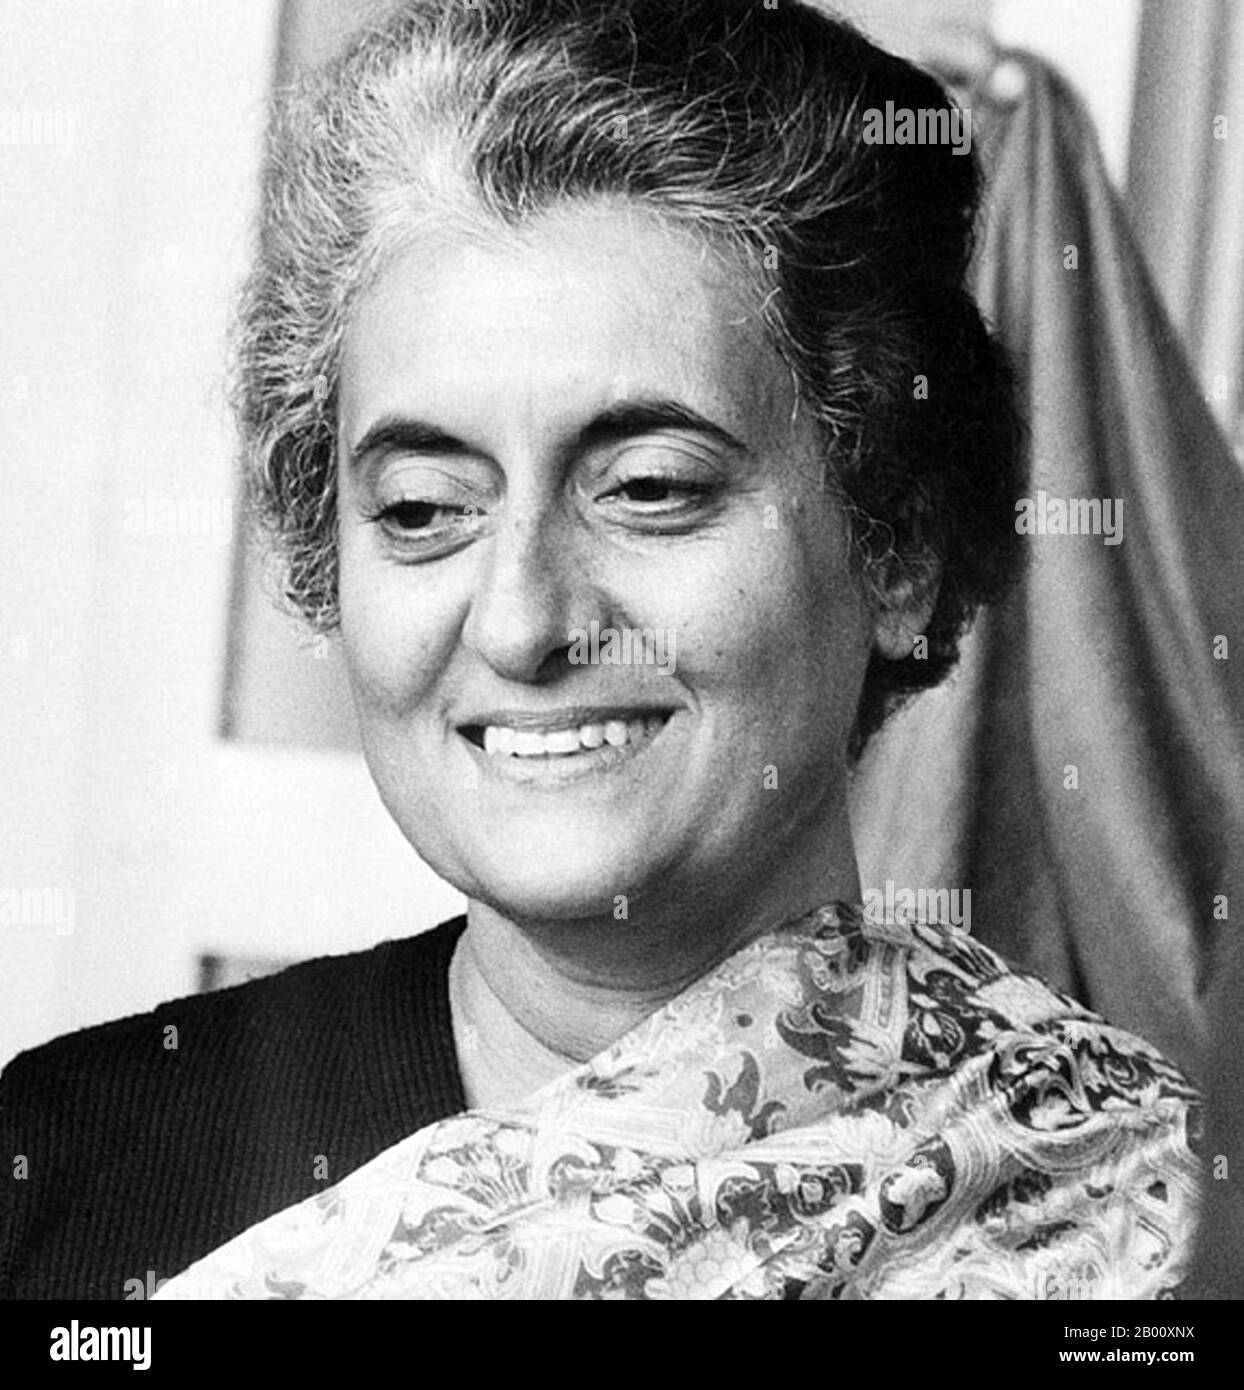 Inde: Indira Gandhi (1917-1984), Premier ministre de l'Inde pour quatre mandats consécutifs, 1966-1984. Indira Priyadarshini Gandhi (19 novembre 1917 – 31 octobre 1984) a été Premier Ministre de la République de l'Inde pour trois mandats consécutifs de 1966 à 1977 et pour un quatrième mandat de 1980 jusqu'à son assassinat en 1984, soit un total de quinze ans. Elle est la seule femme Premier ministre de l'Inde à ce jour. Elle est la plus longue femme Premier ministre au monde. Banque D'Images